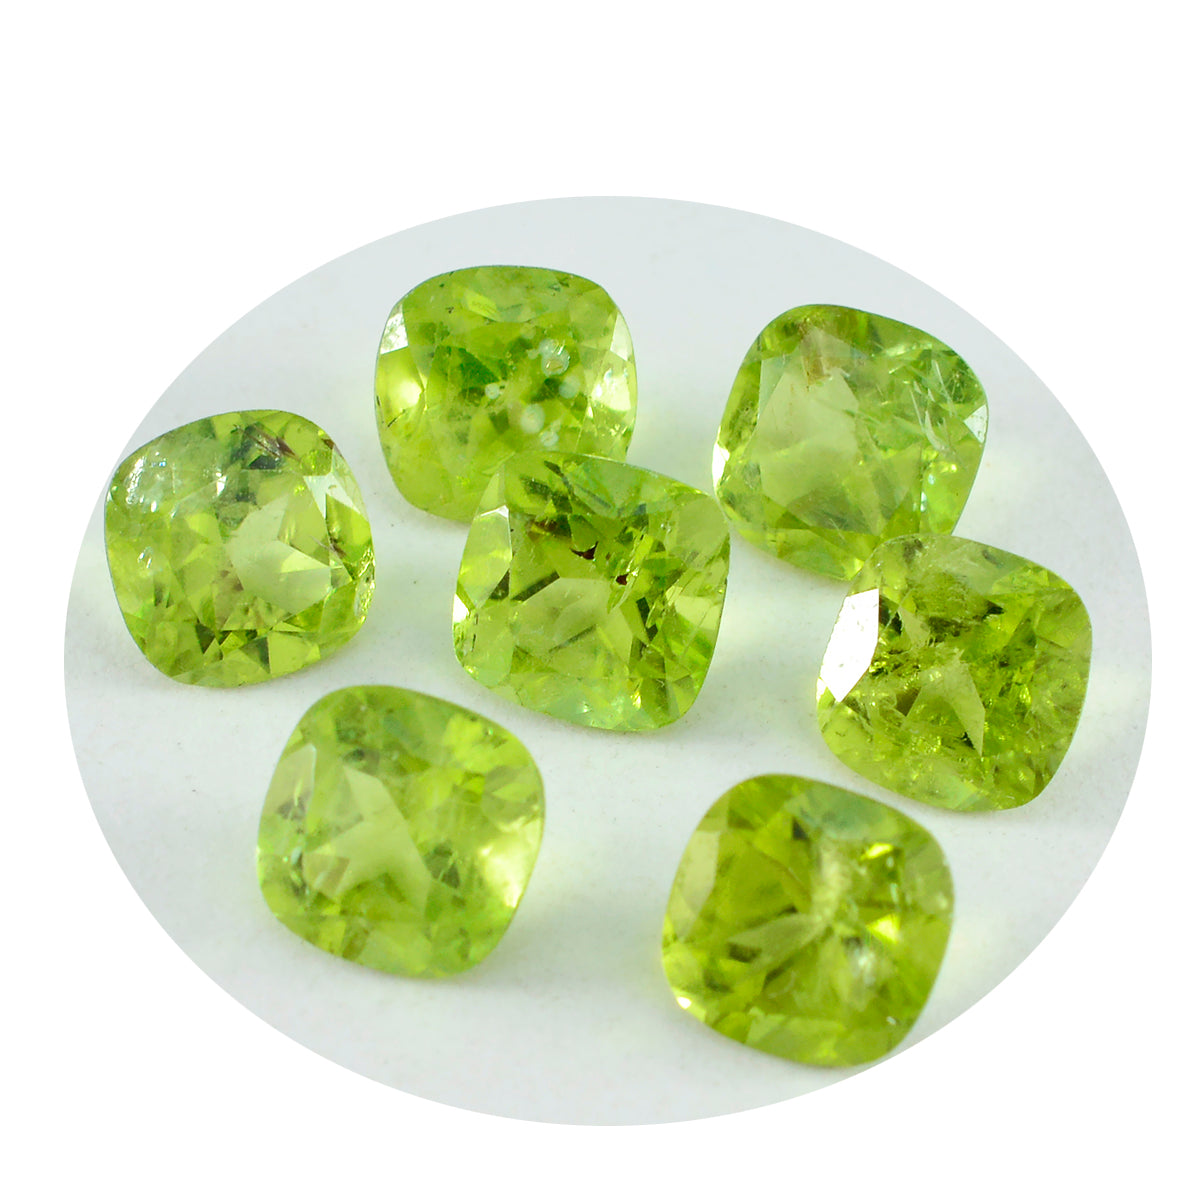 Riyogems, 1 pieza, peridoto verde natural facetado, 5x5mm, forma de cojín, gemas sueltas de buena calidad